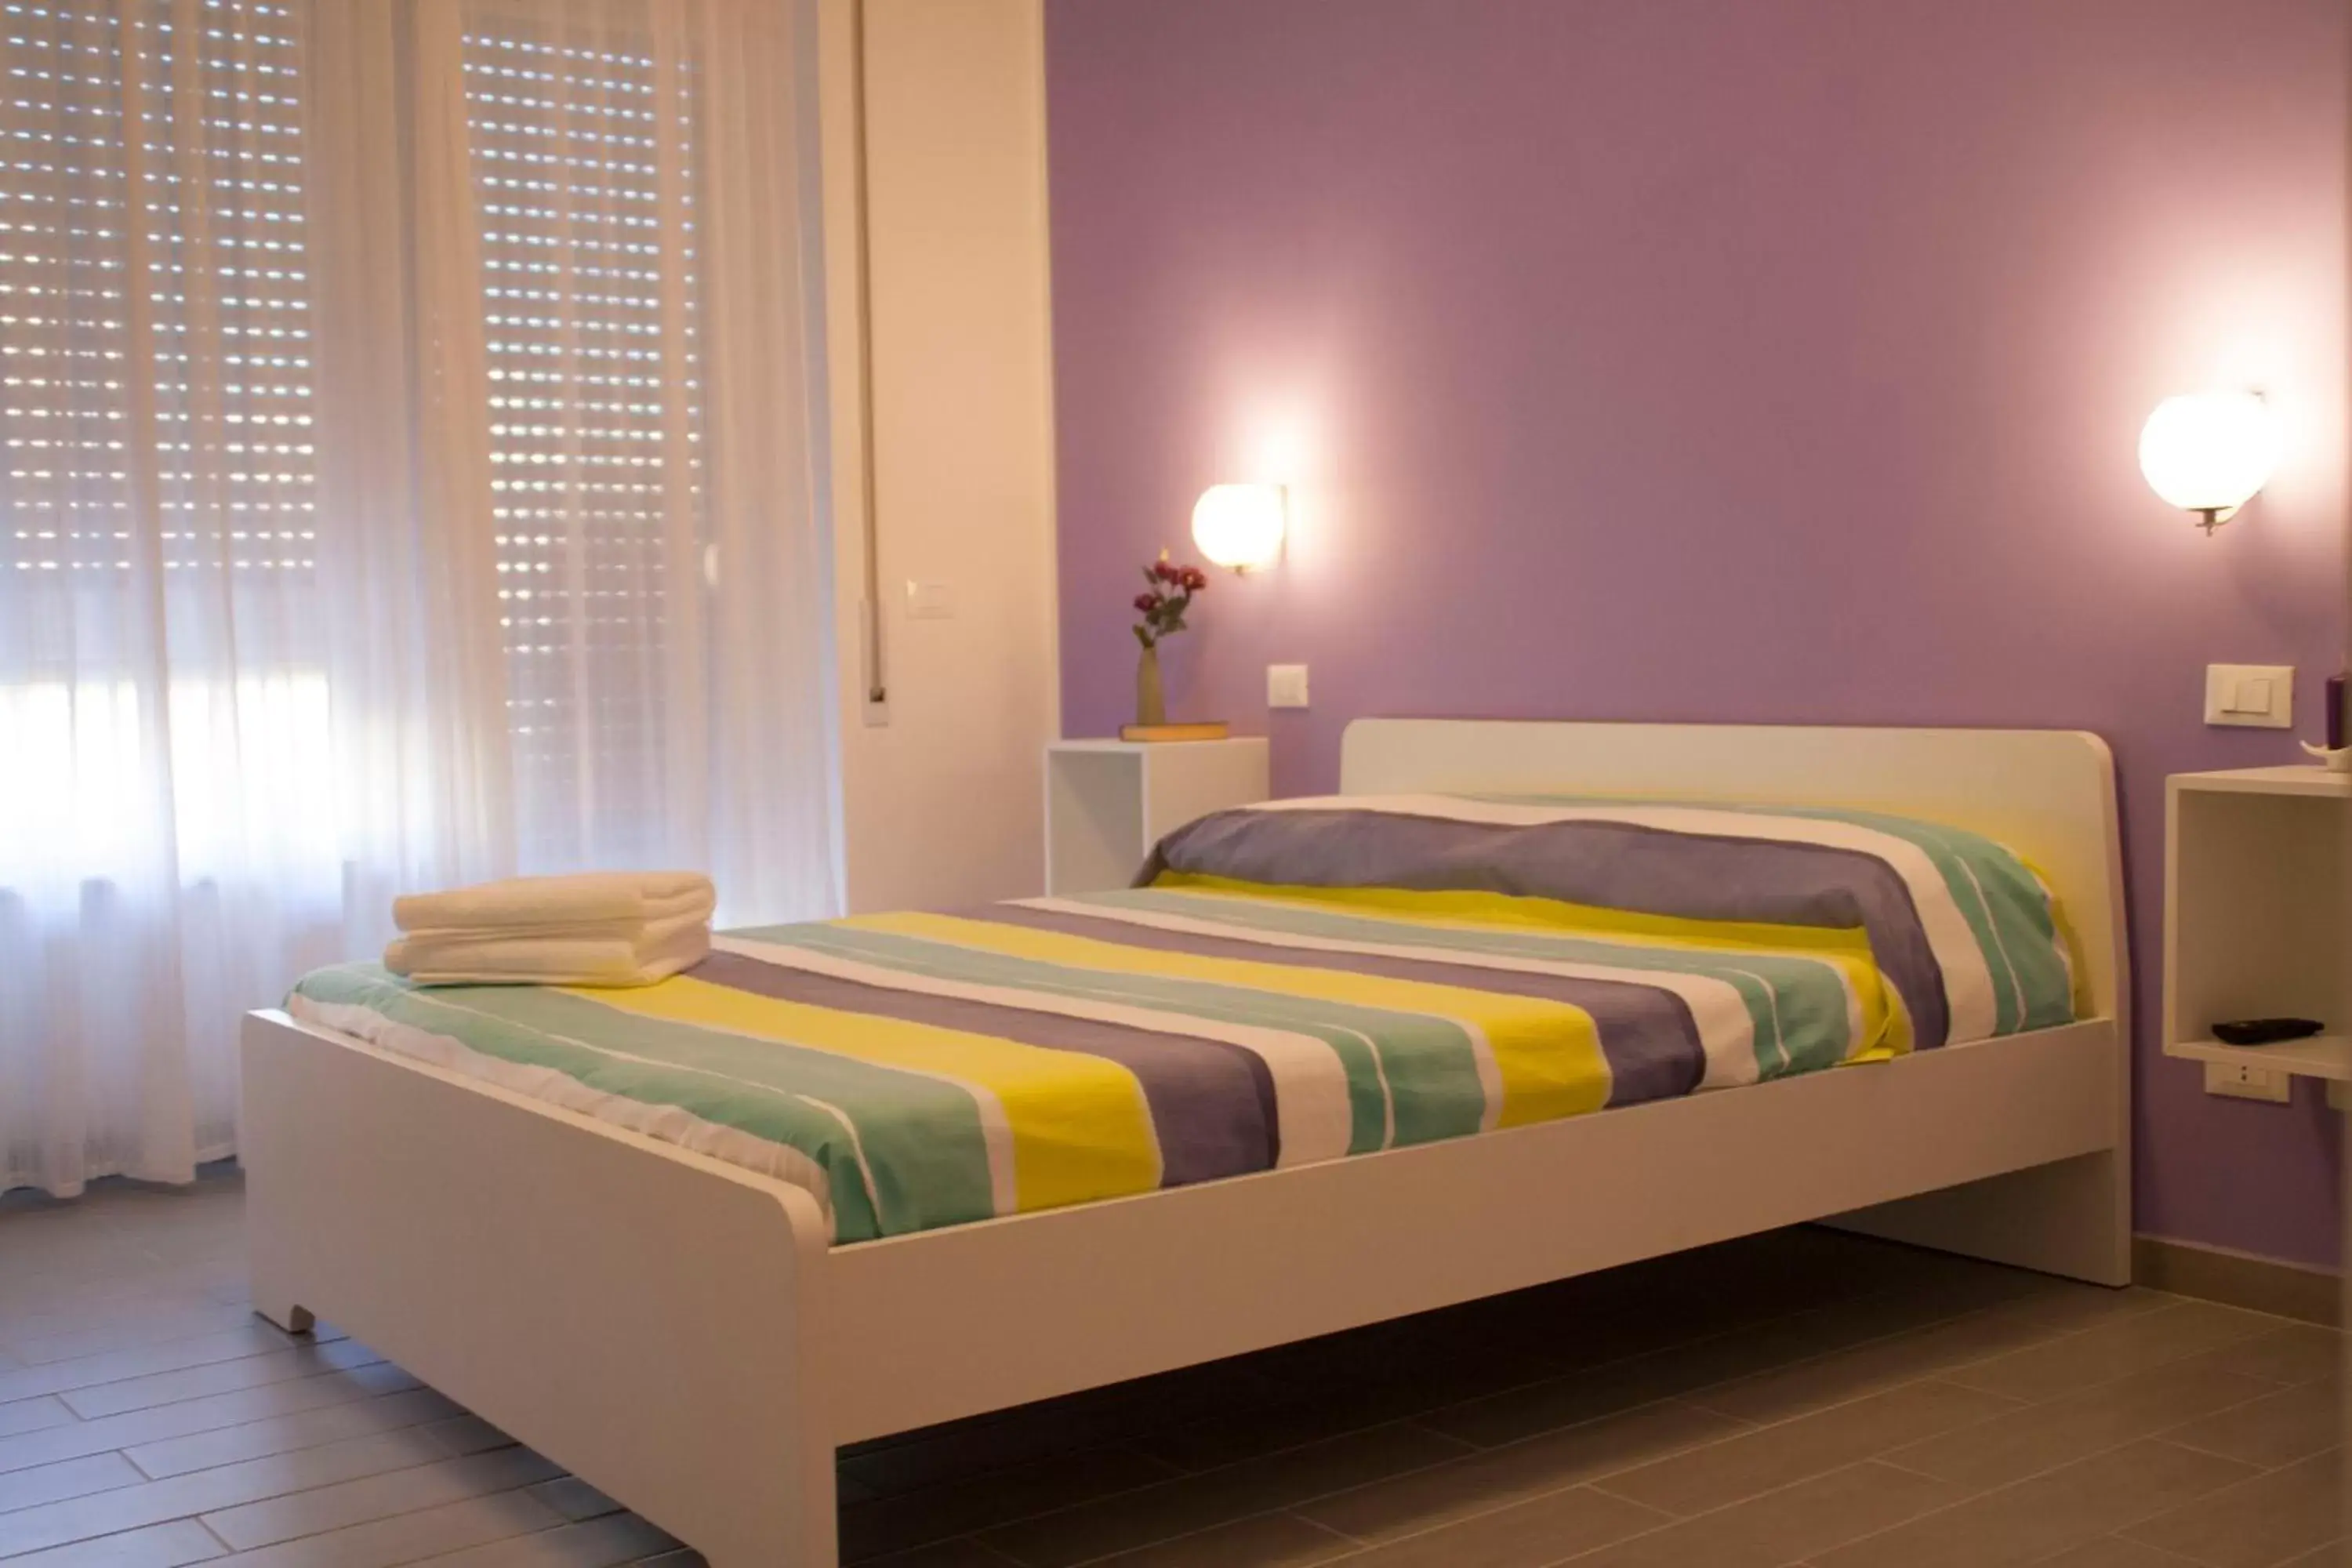 Bed, Room Photo in DaNoi in Trastevere